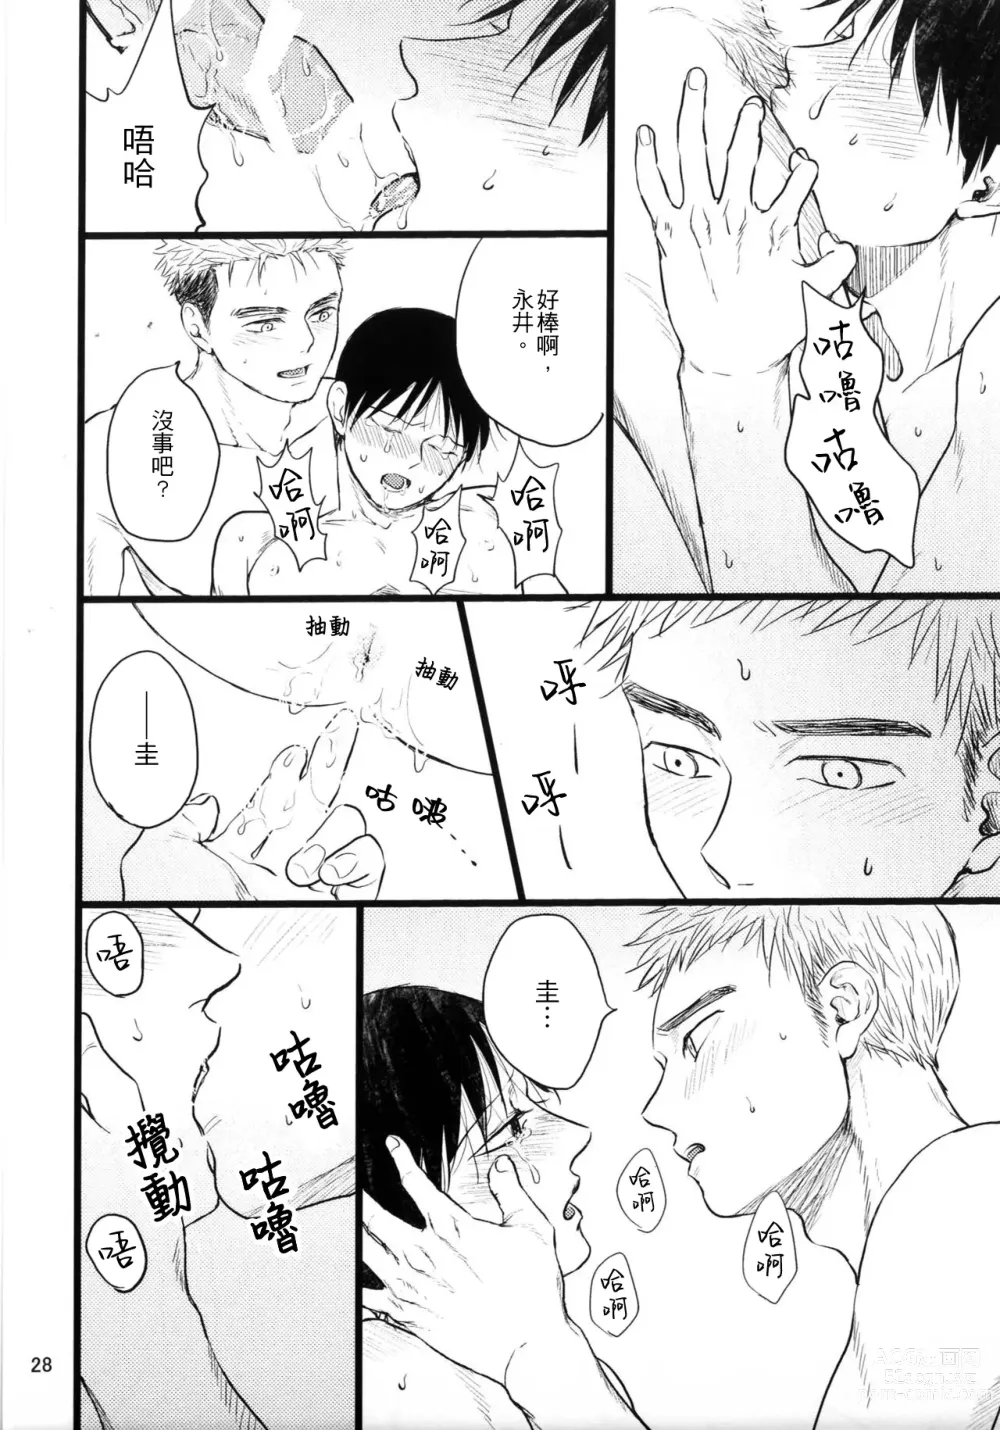 Page 26 of doujinshi Umi ga Nakano de Nakano ga Umi de